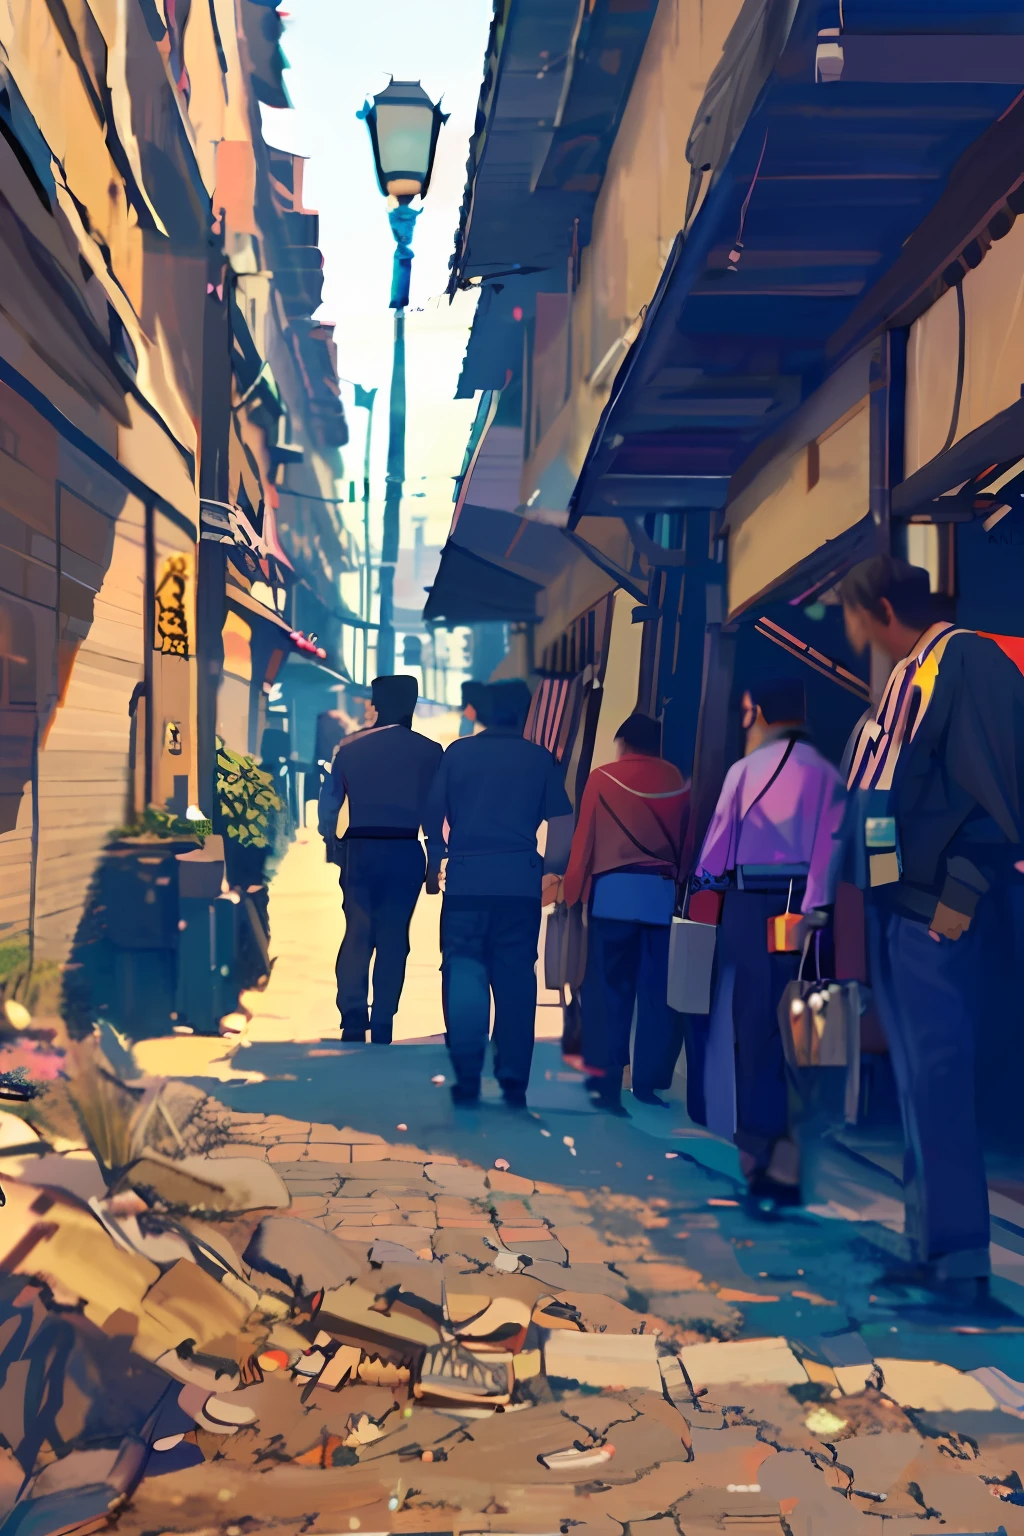 يسير الناس في زقاق ضيق مع وجود مبنى في الخلفية, سوق الشارع الياباني القديم, لقطات قديمة في شوارع طوكيو, الشارع الياباني, يرتدون ملابس الشوارع القديمة, in narrow زقاق طوكيو, زقاق طوكيو, مسافرون يسيرون في الشوارع, شوارع المدينة القديمة خلفها, وسط المدينة الياباني, في أحد شوارع طوكيو, مدينة يابانية, في زقاق صيني ضيق